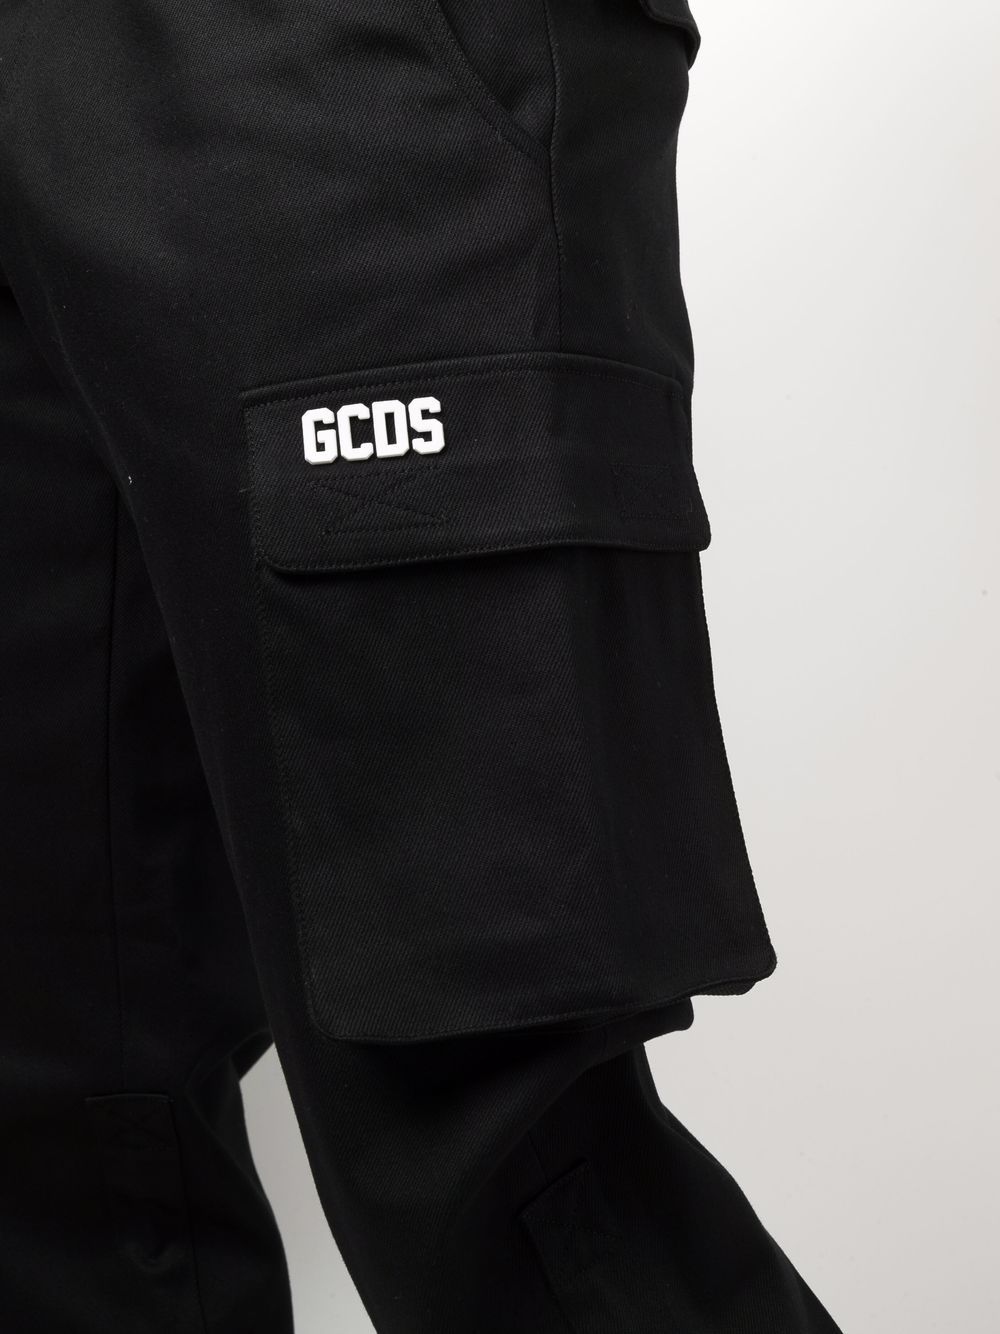 фото Gcds прямые брюки карго